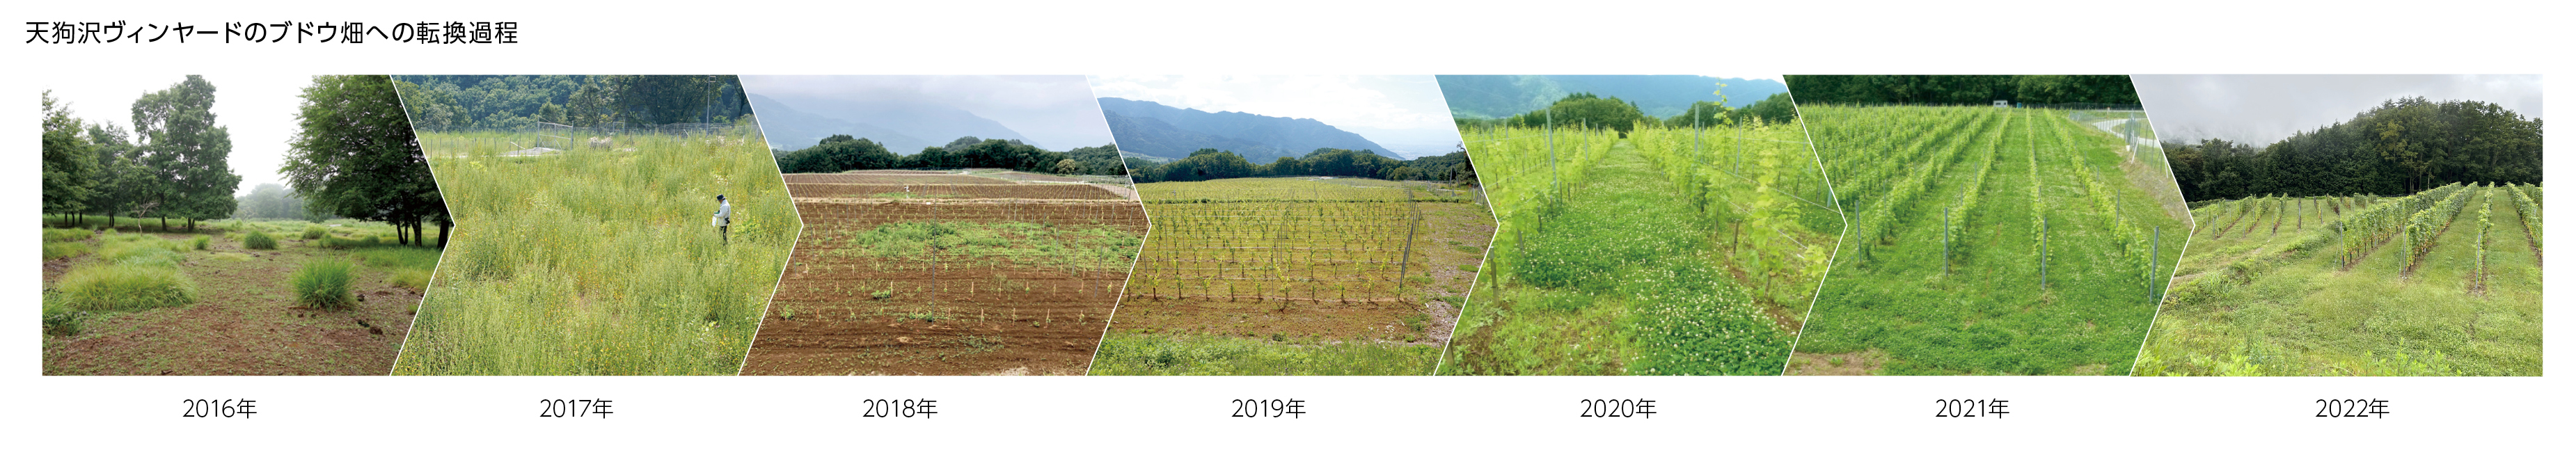 写真：天狗沢ヴィンヤードのブドウ畑への転換過程、2016年→2017年→2018年→2019年→2020年→2021年→2022年